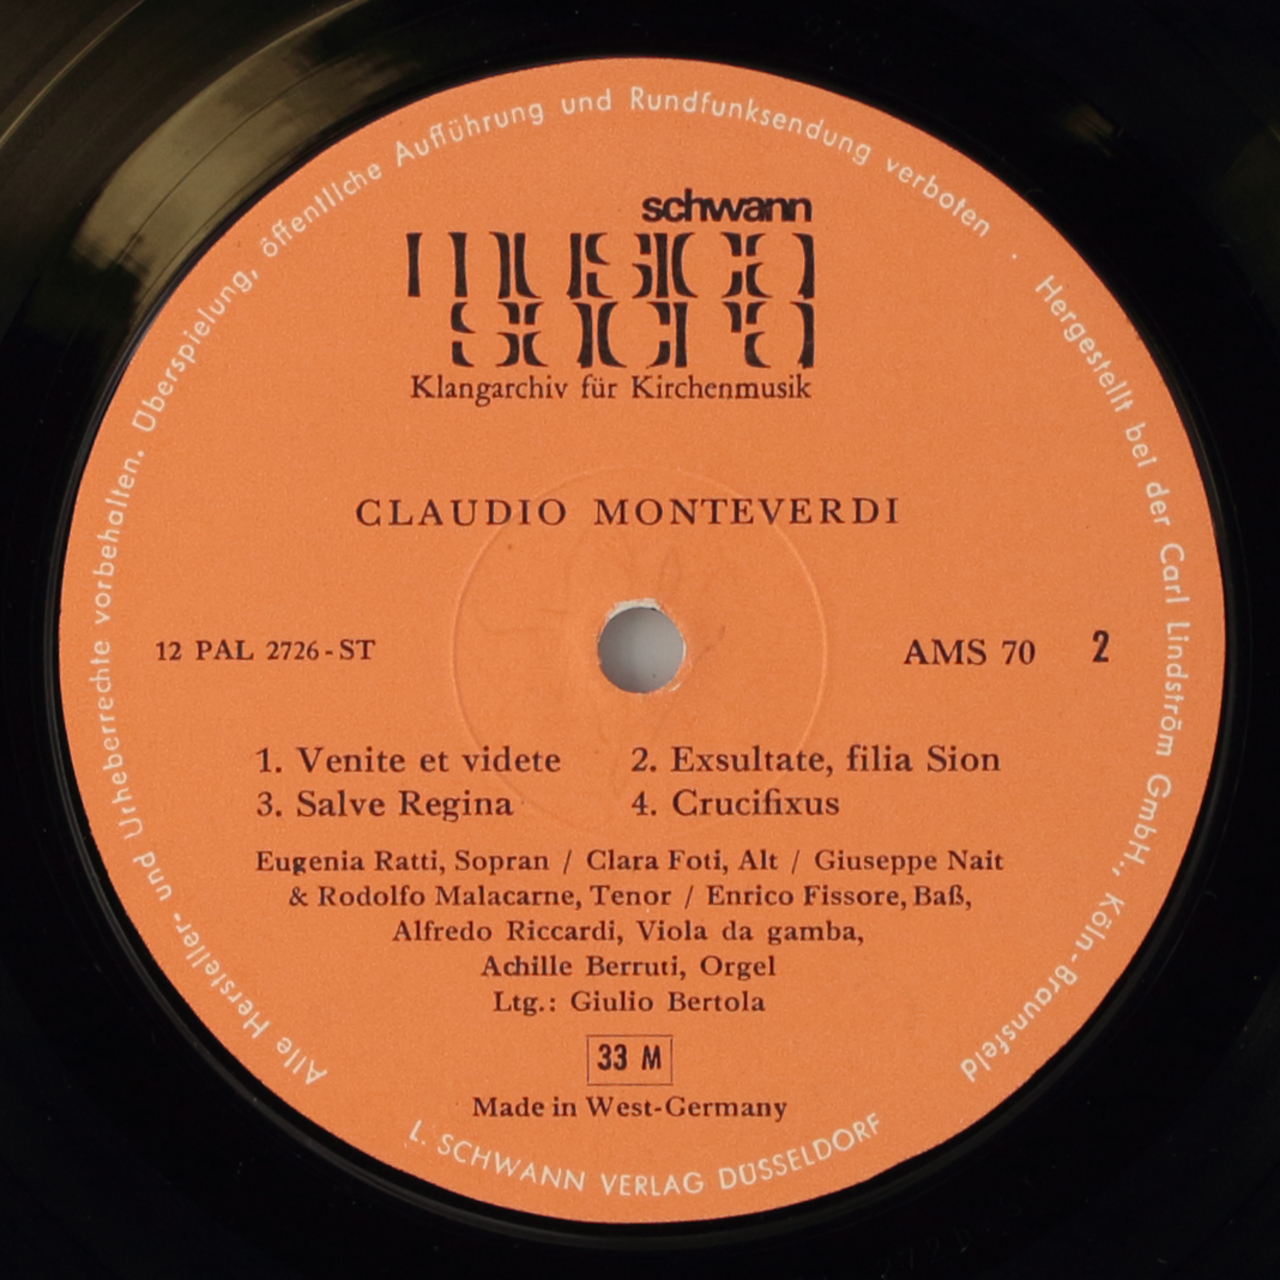 Monteverdi: Gloria a 7